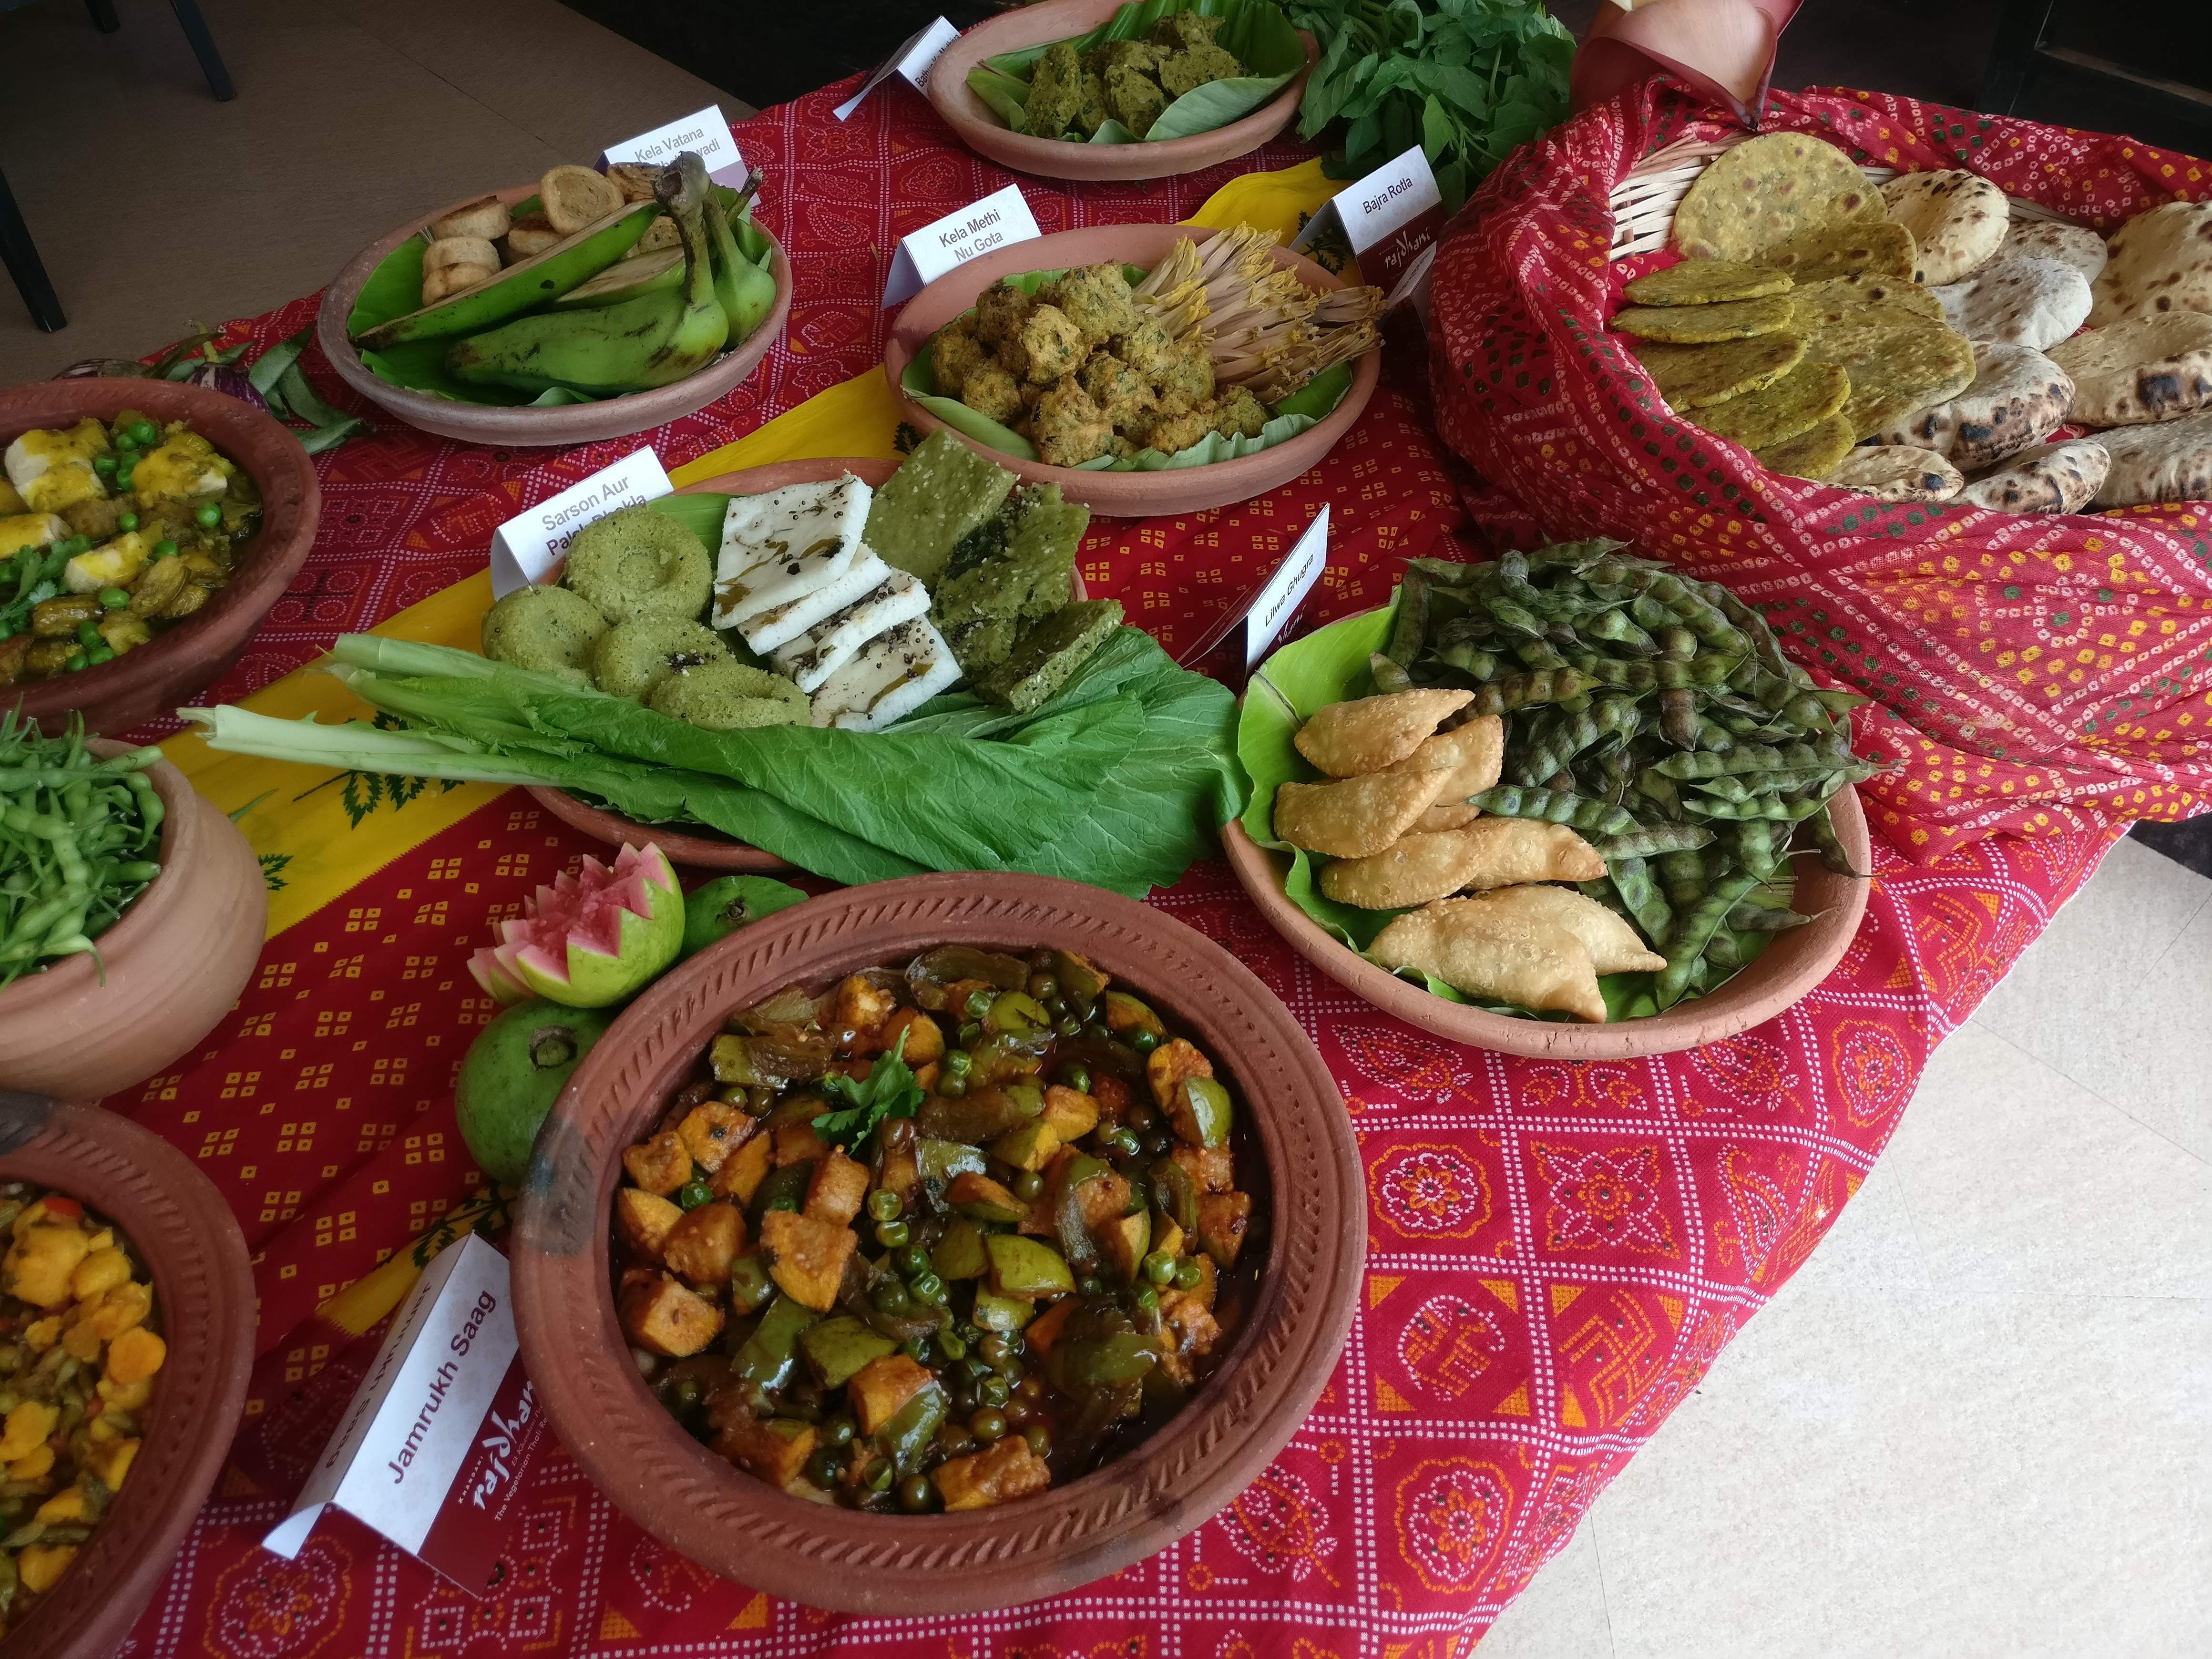 Dish,Food,Cuisine,Meal,Ingredient,Vegetarian food,Salad,Produce,Leaf vegetable,appetizer